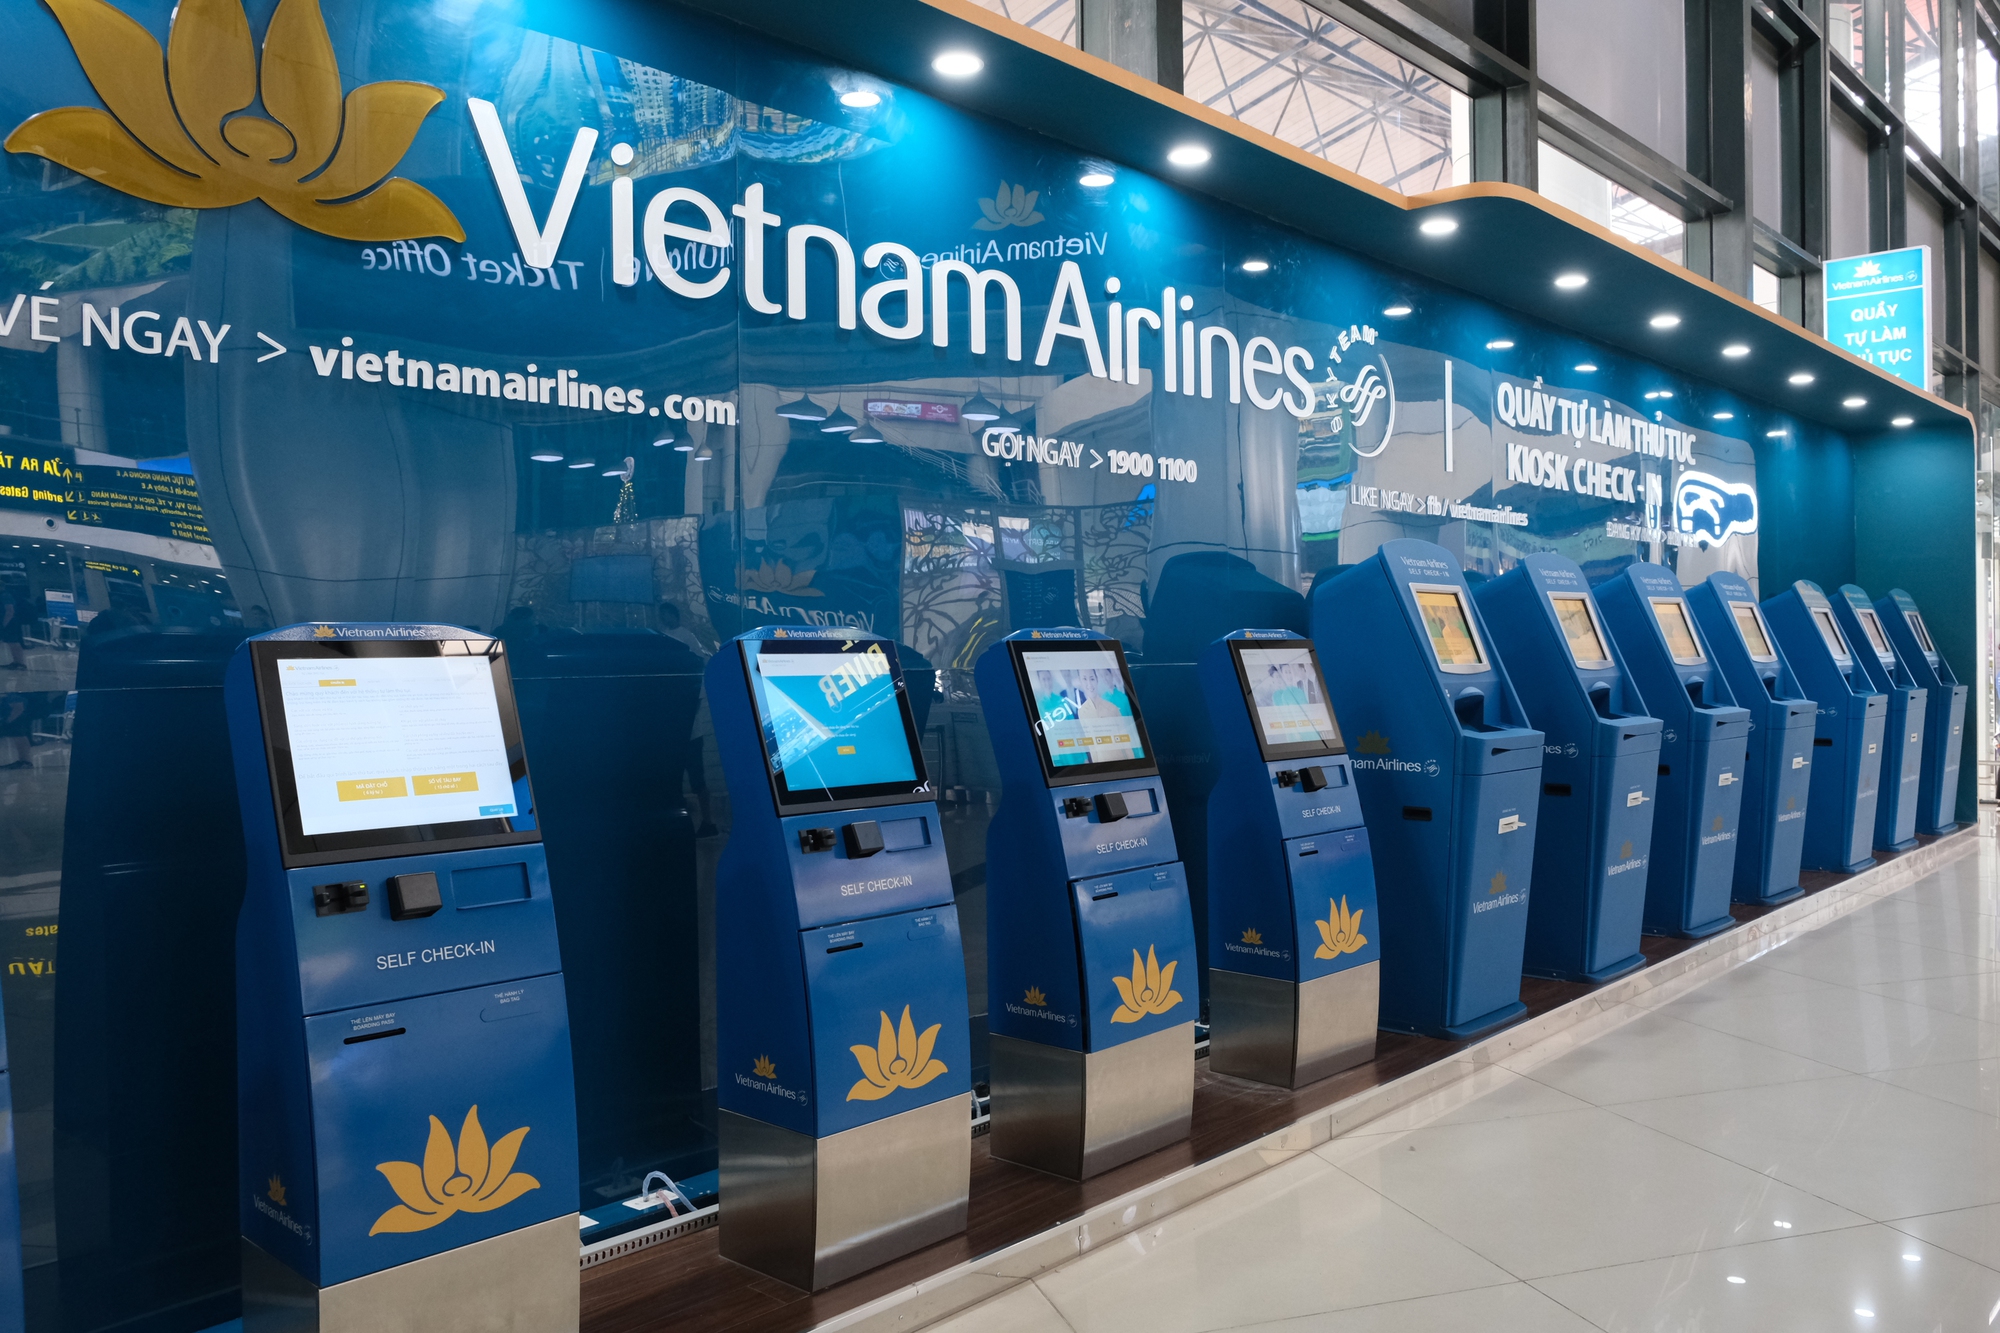 Sân bay Nội Bài dự kiến đón 80.000 khách/ngày dịp nghỉ lễ Quốc khánh, hành khách cần lưu ý những gì khi đi tàu bay? - Ảnh 5.